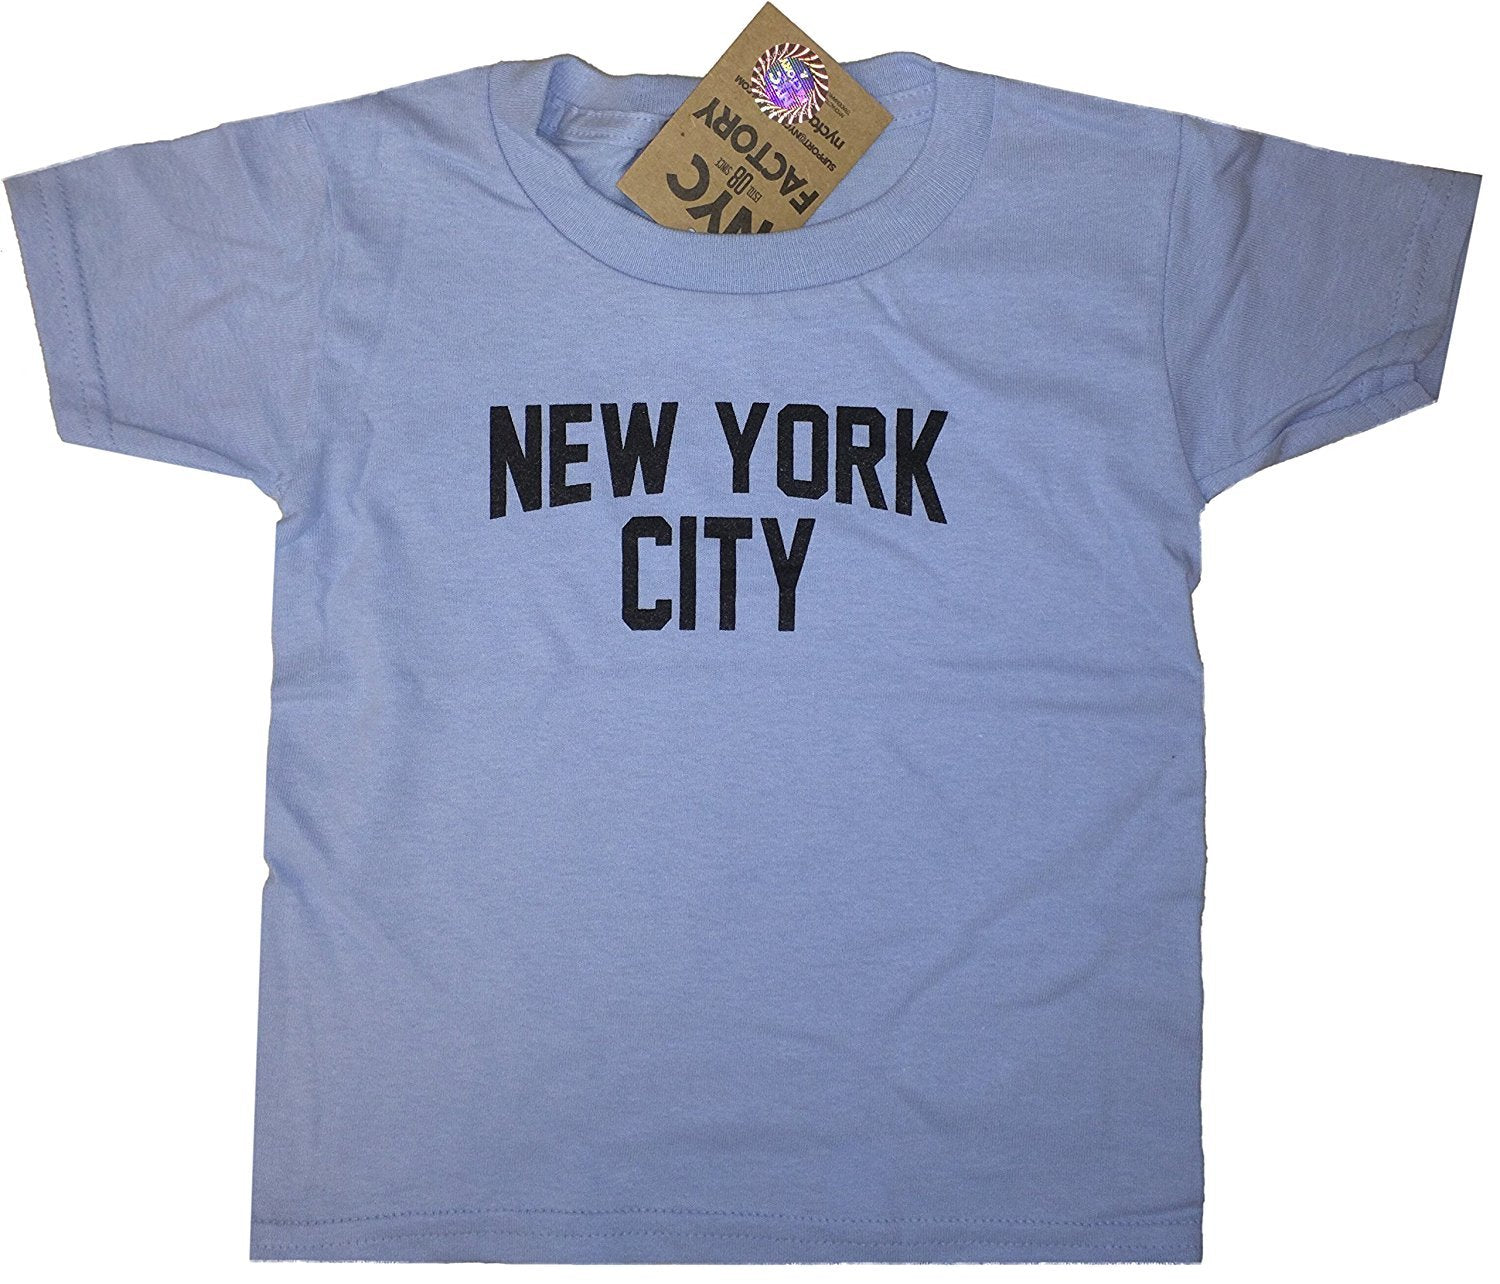 New York City Toddler T-Shirt Screenprinted Light Blue Baby Lennon Tee